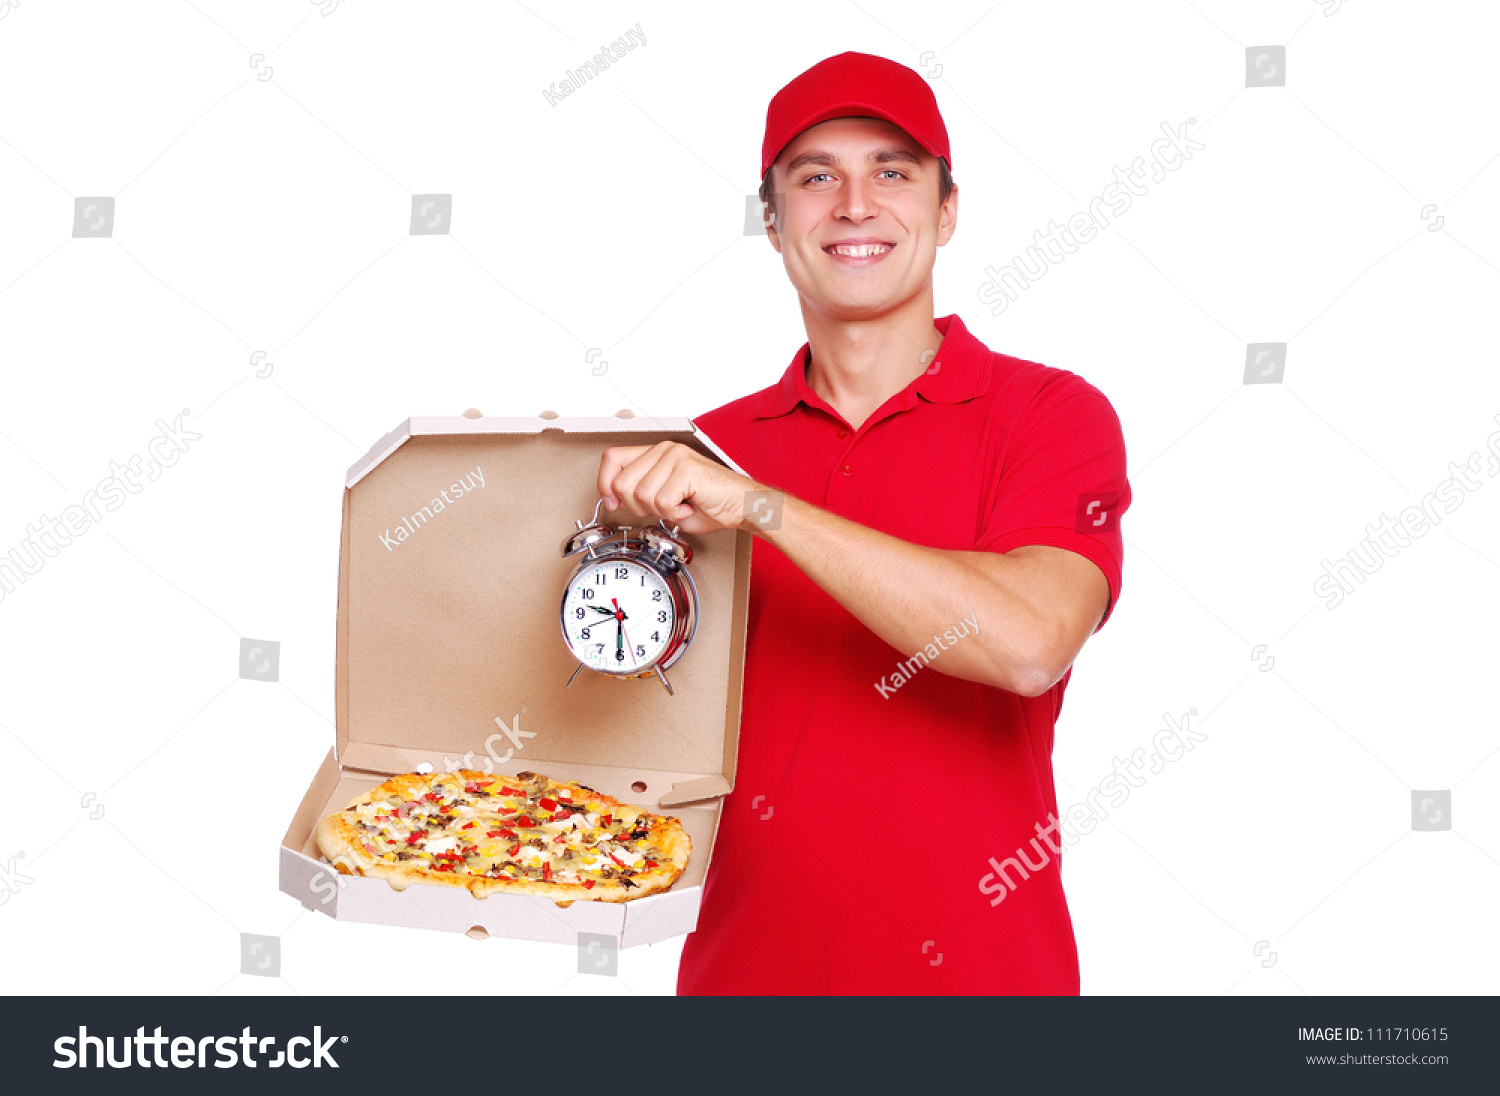 бесплатная и быстрая доставка пиццы в фото 11